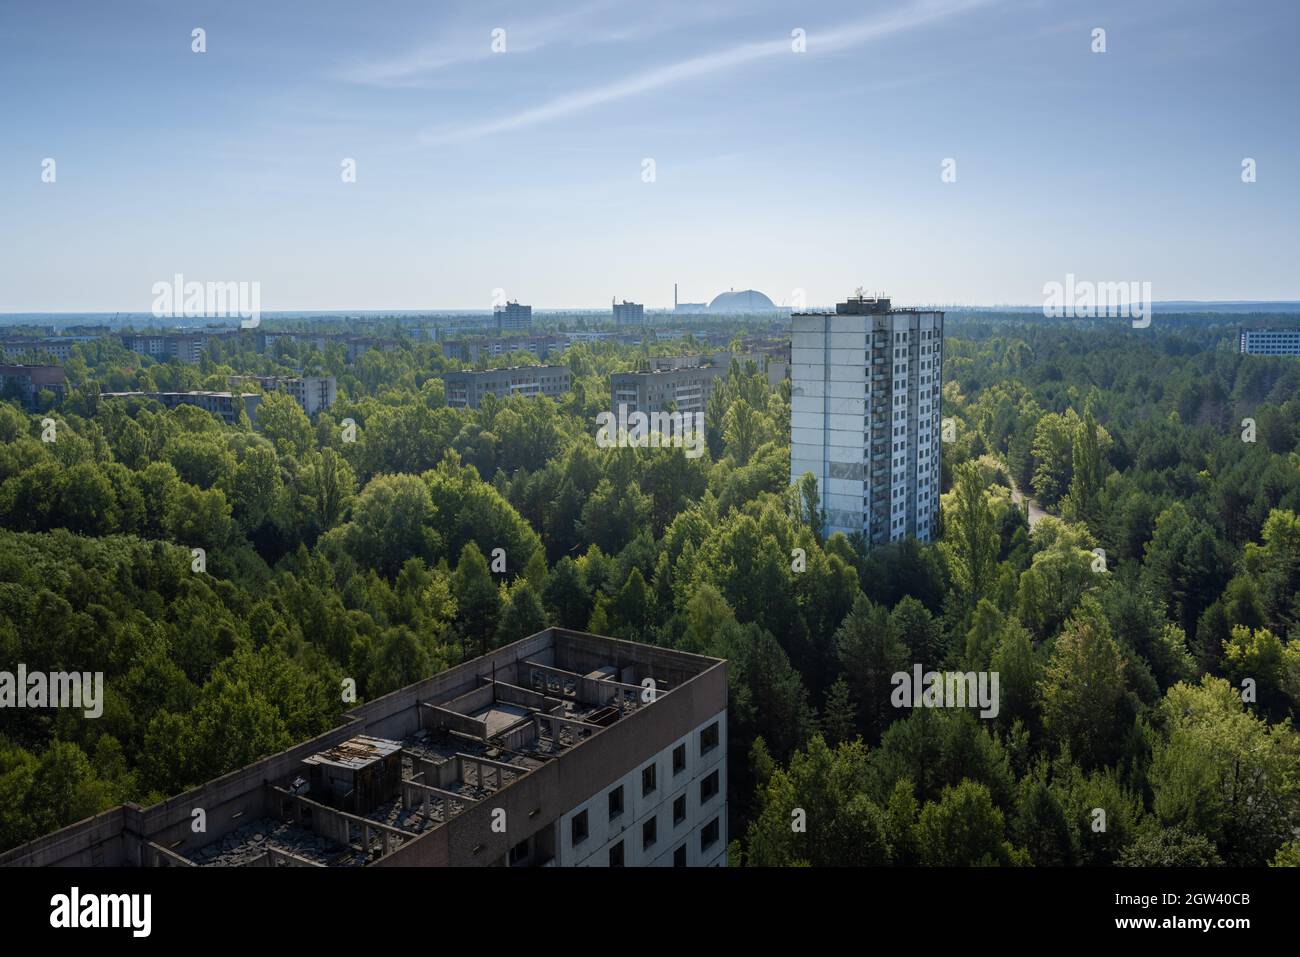 Luftaufnahme der Sperrzone von Pripyat und Tschernobyl mit Reaktor des Kernkraftwerks Tschernobyl 4 Neue sichere Begrenzung im Hintergrund - Pripyat, Tschernob Stockfoto